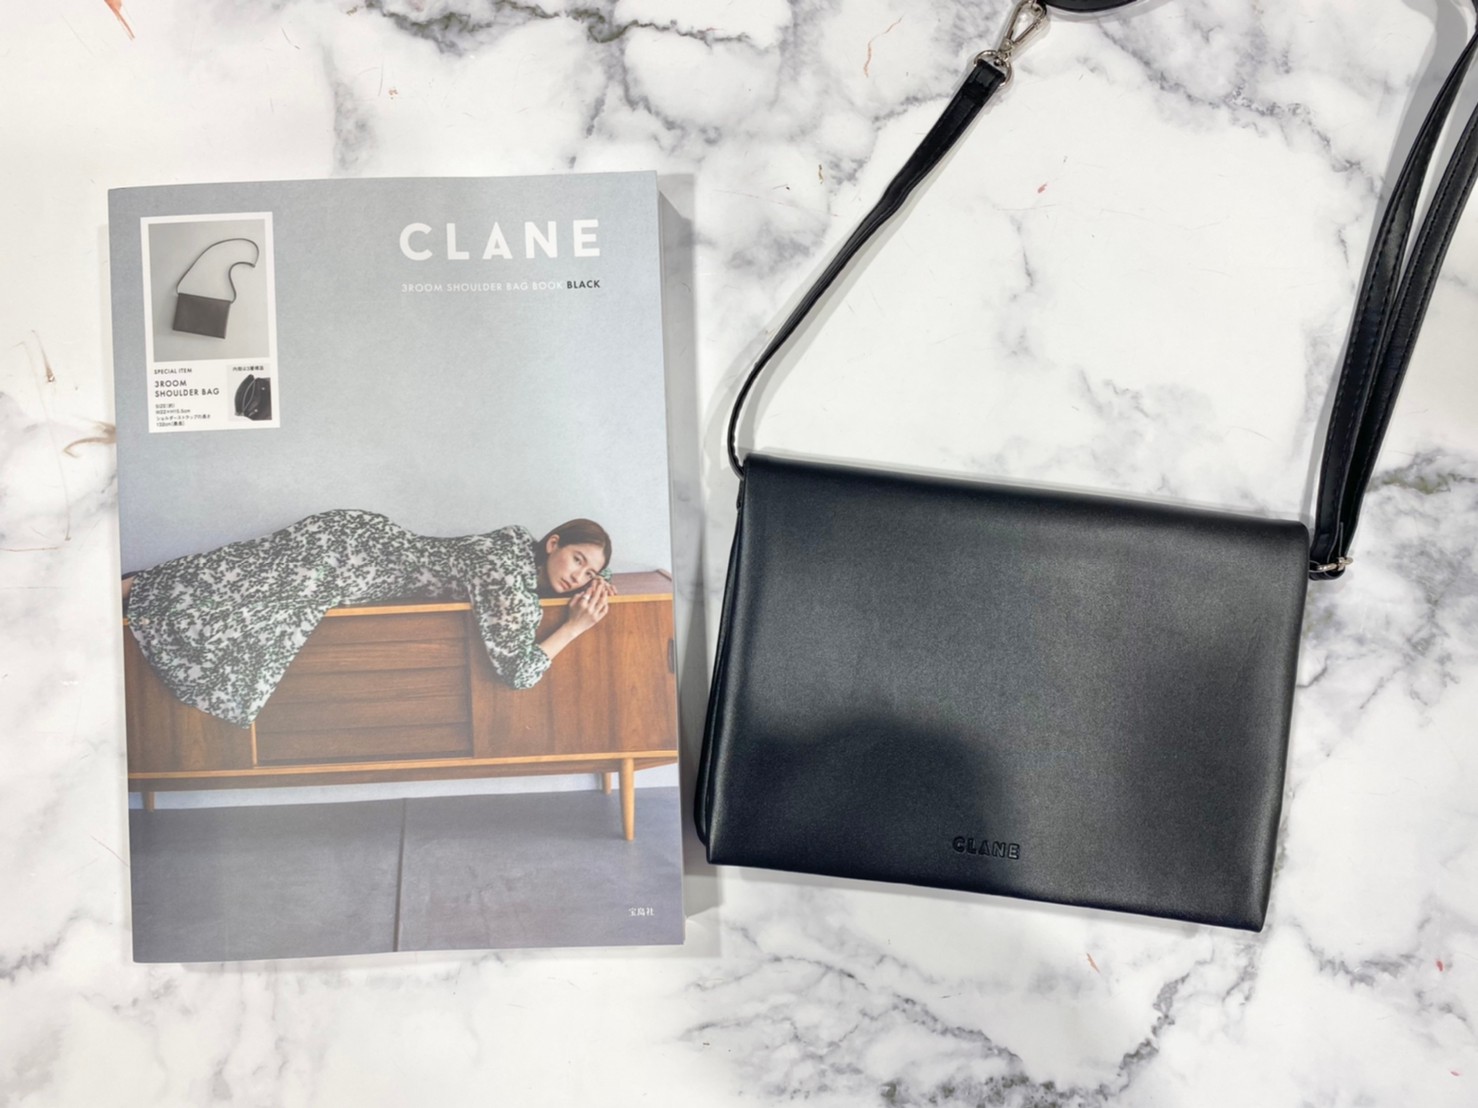 CLANE 3ROOM SHOULDER BAG BOOK BLACKと付録画像